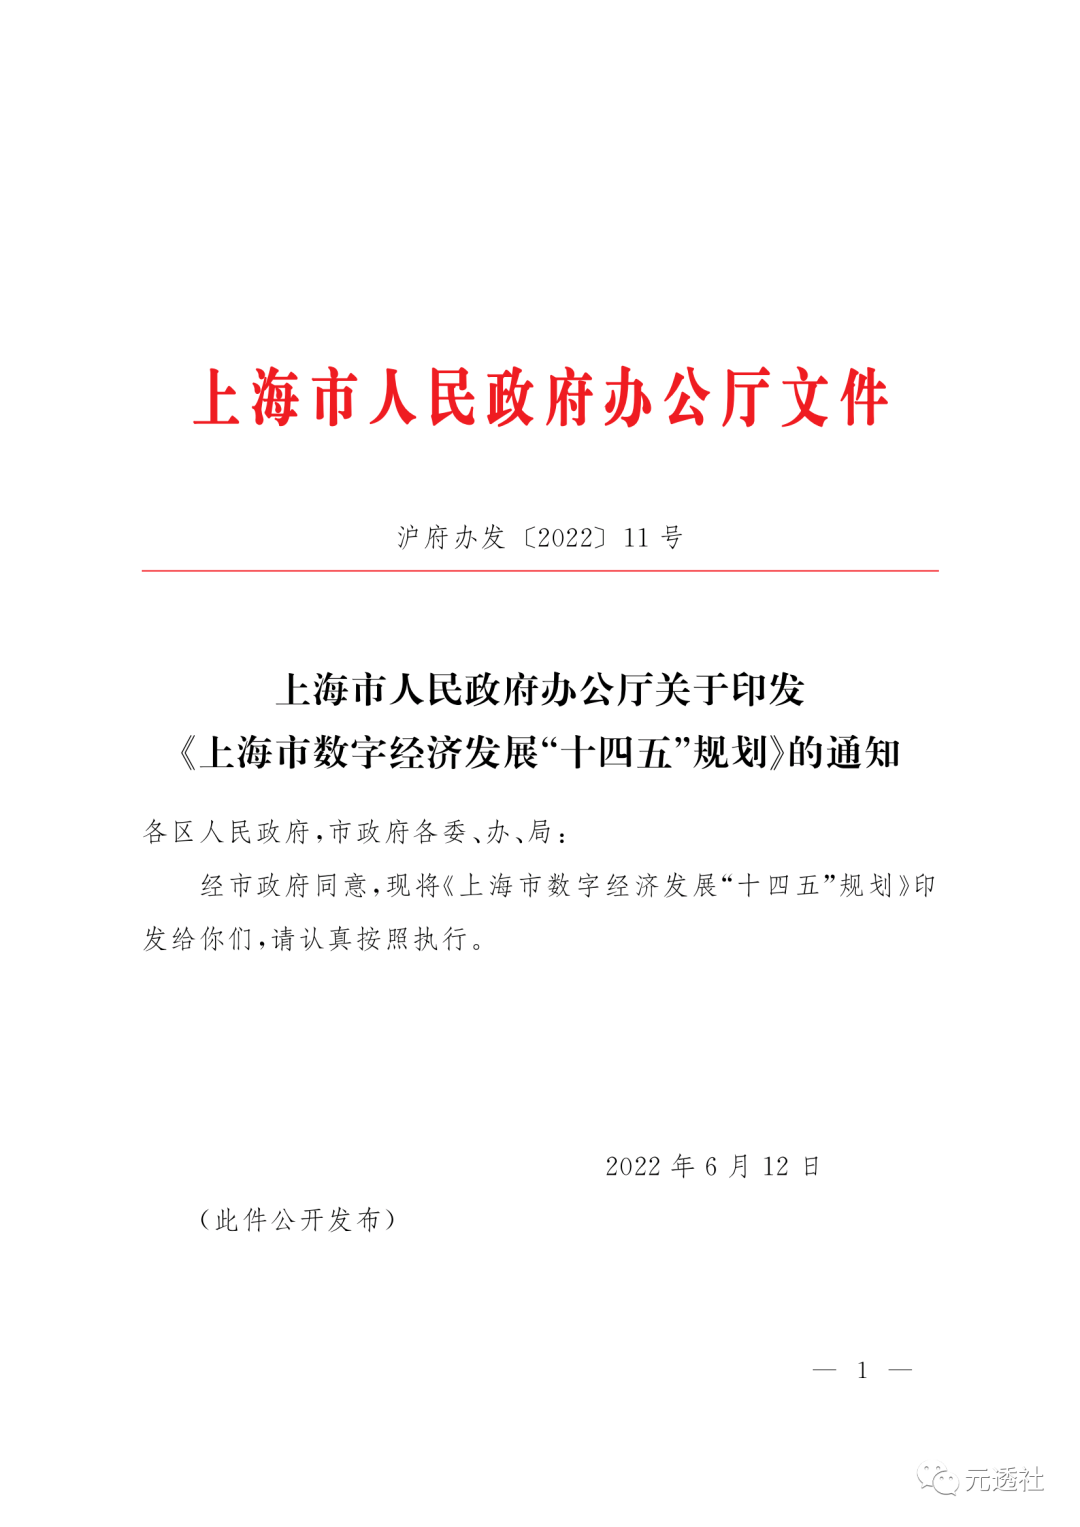 上海市人民政府:支持龍頭企業探索NFT交易平臺建設